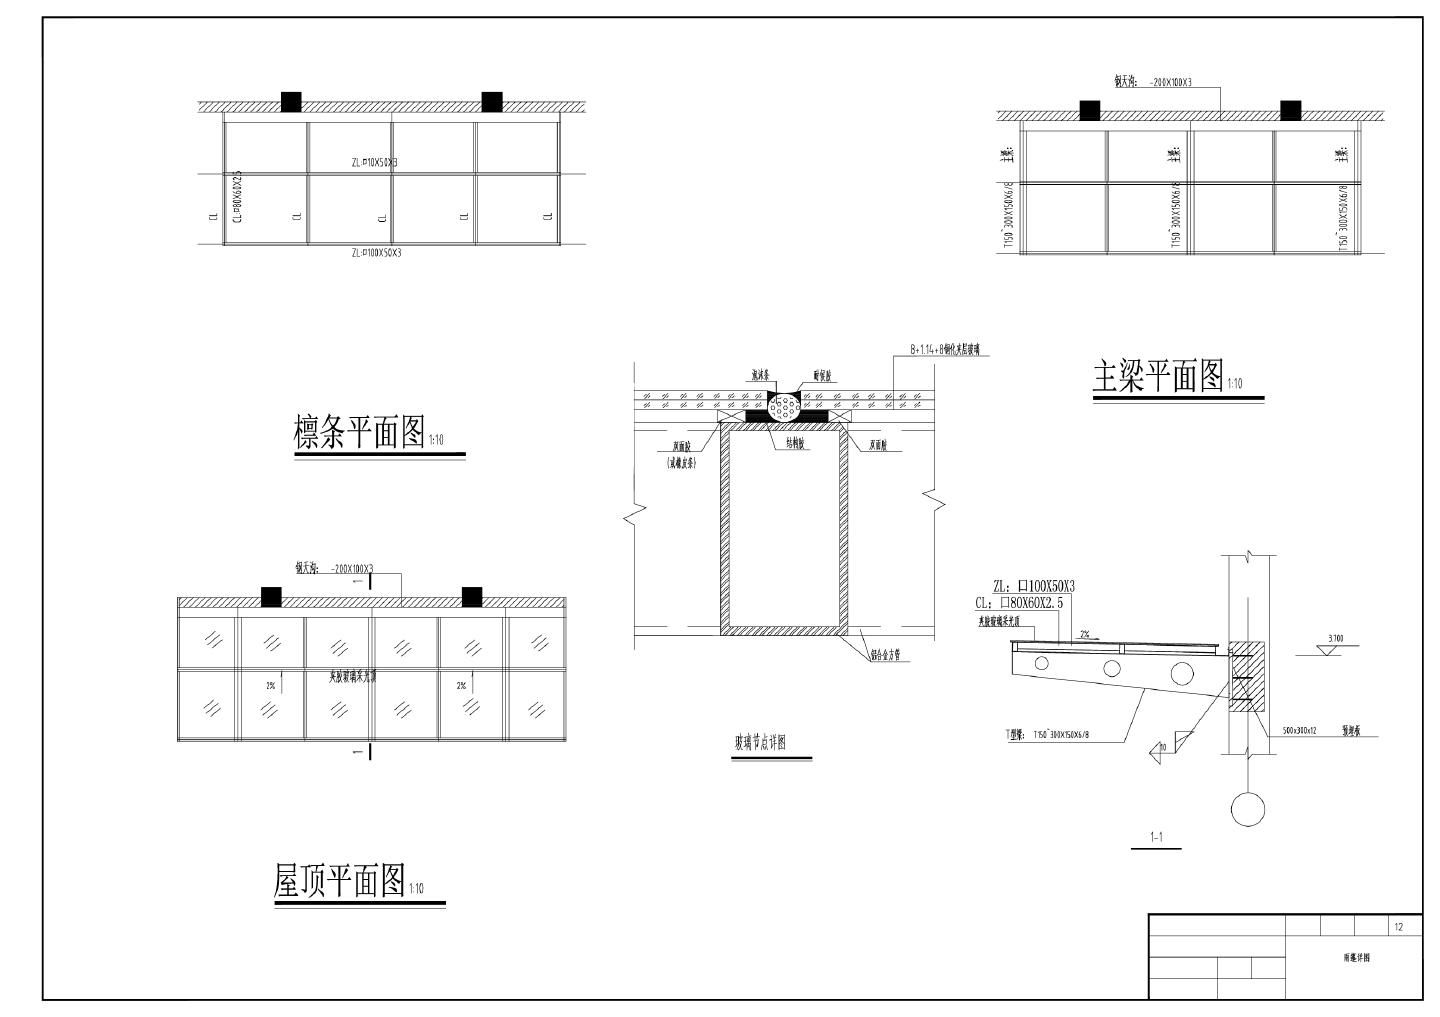 土木工程毕业设计湖南省某公司办公楼 含计算书 建筑施工图 结构施工图 施组全套